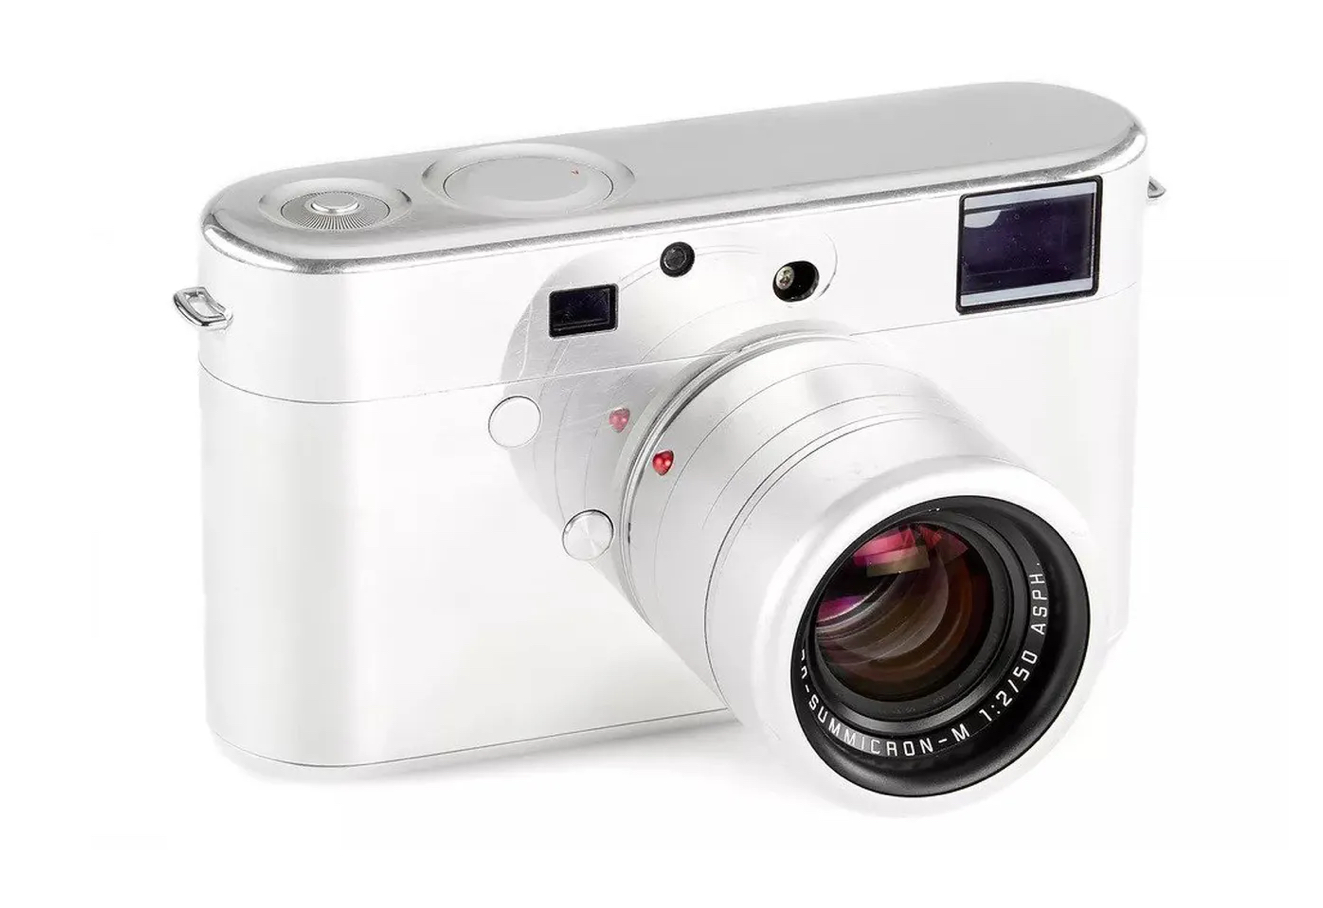 Prototaip Kamera Leica Yang Dibangunkan Jony Ive Dan Marc Newson Akan Dilelong Pada Bulan Jun